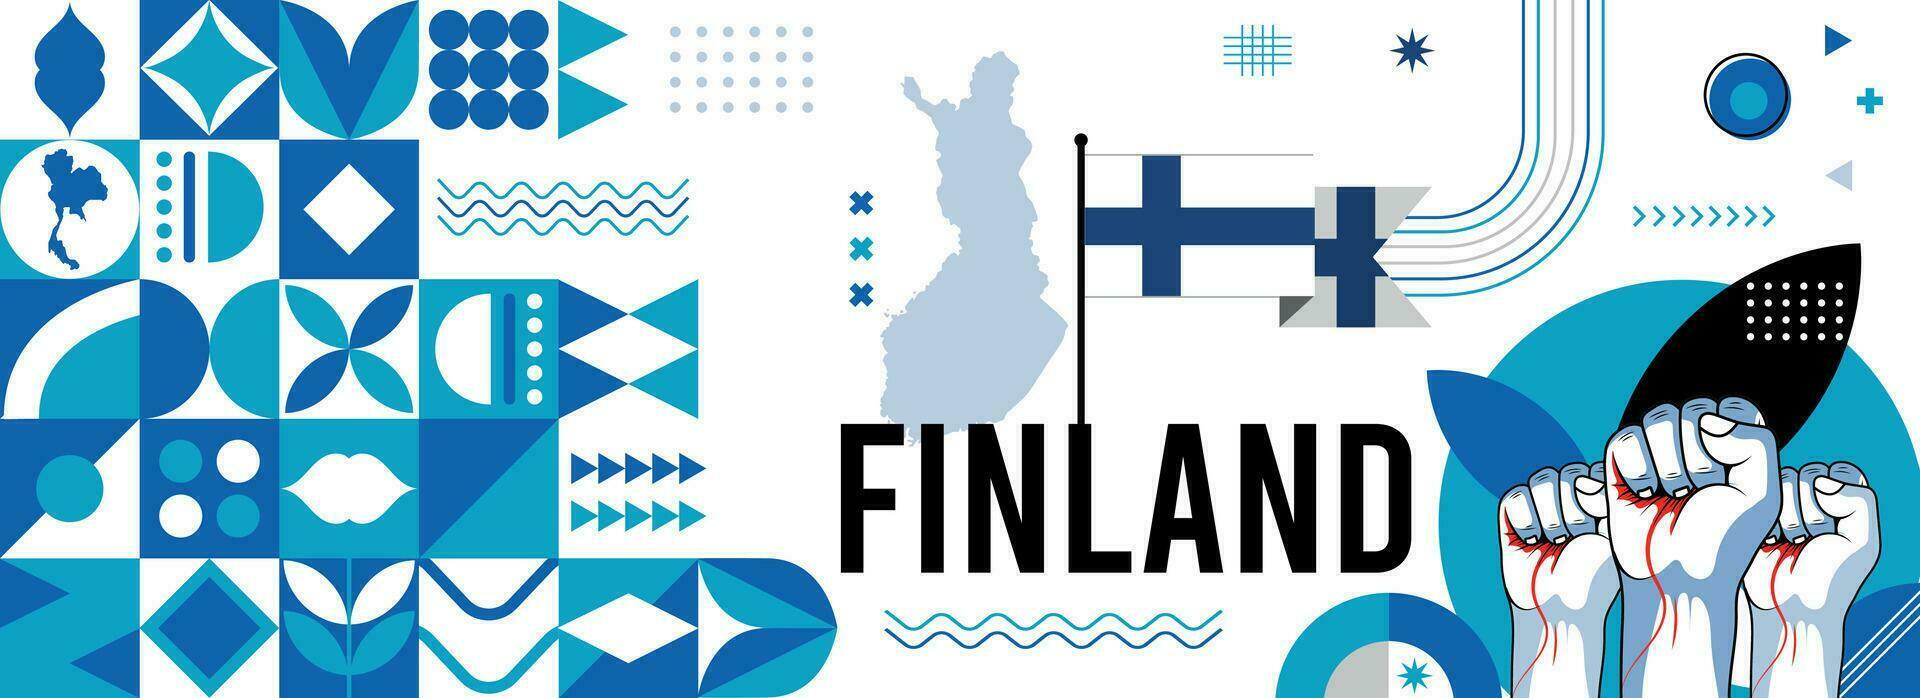 Finlandia nazionale o indipendenza giorno bandiera design per nazione celebrazione. bandiera e carta geografica di Finlandia con sollevato pugni. moderno retrò design con astratto geometrico icone. vettore illustrazione.